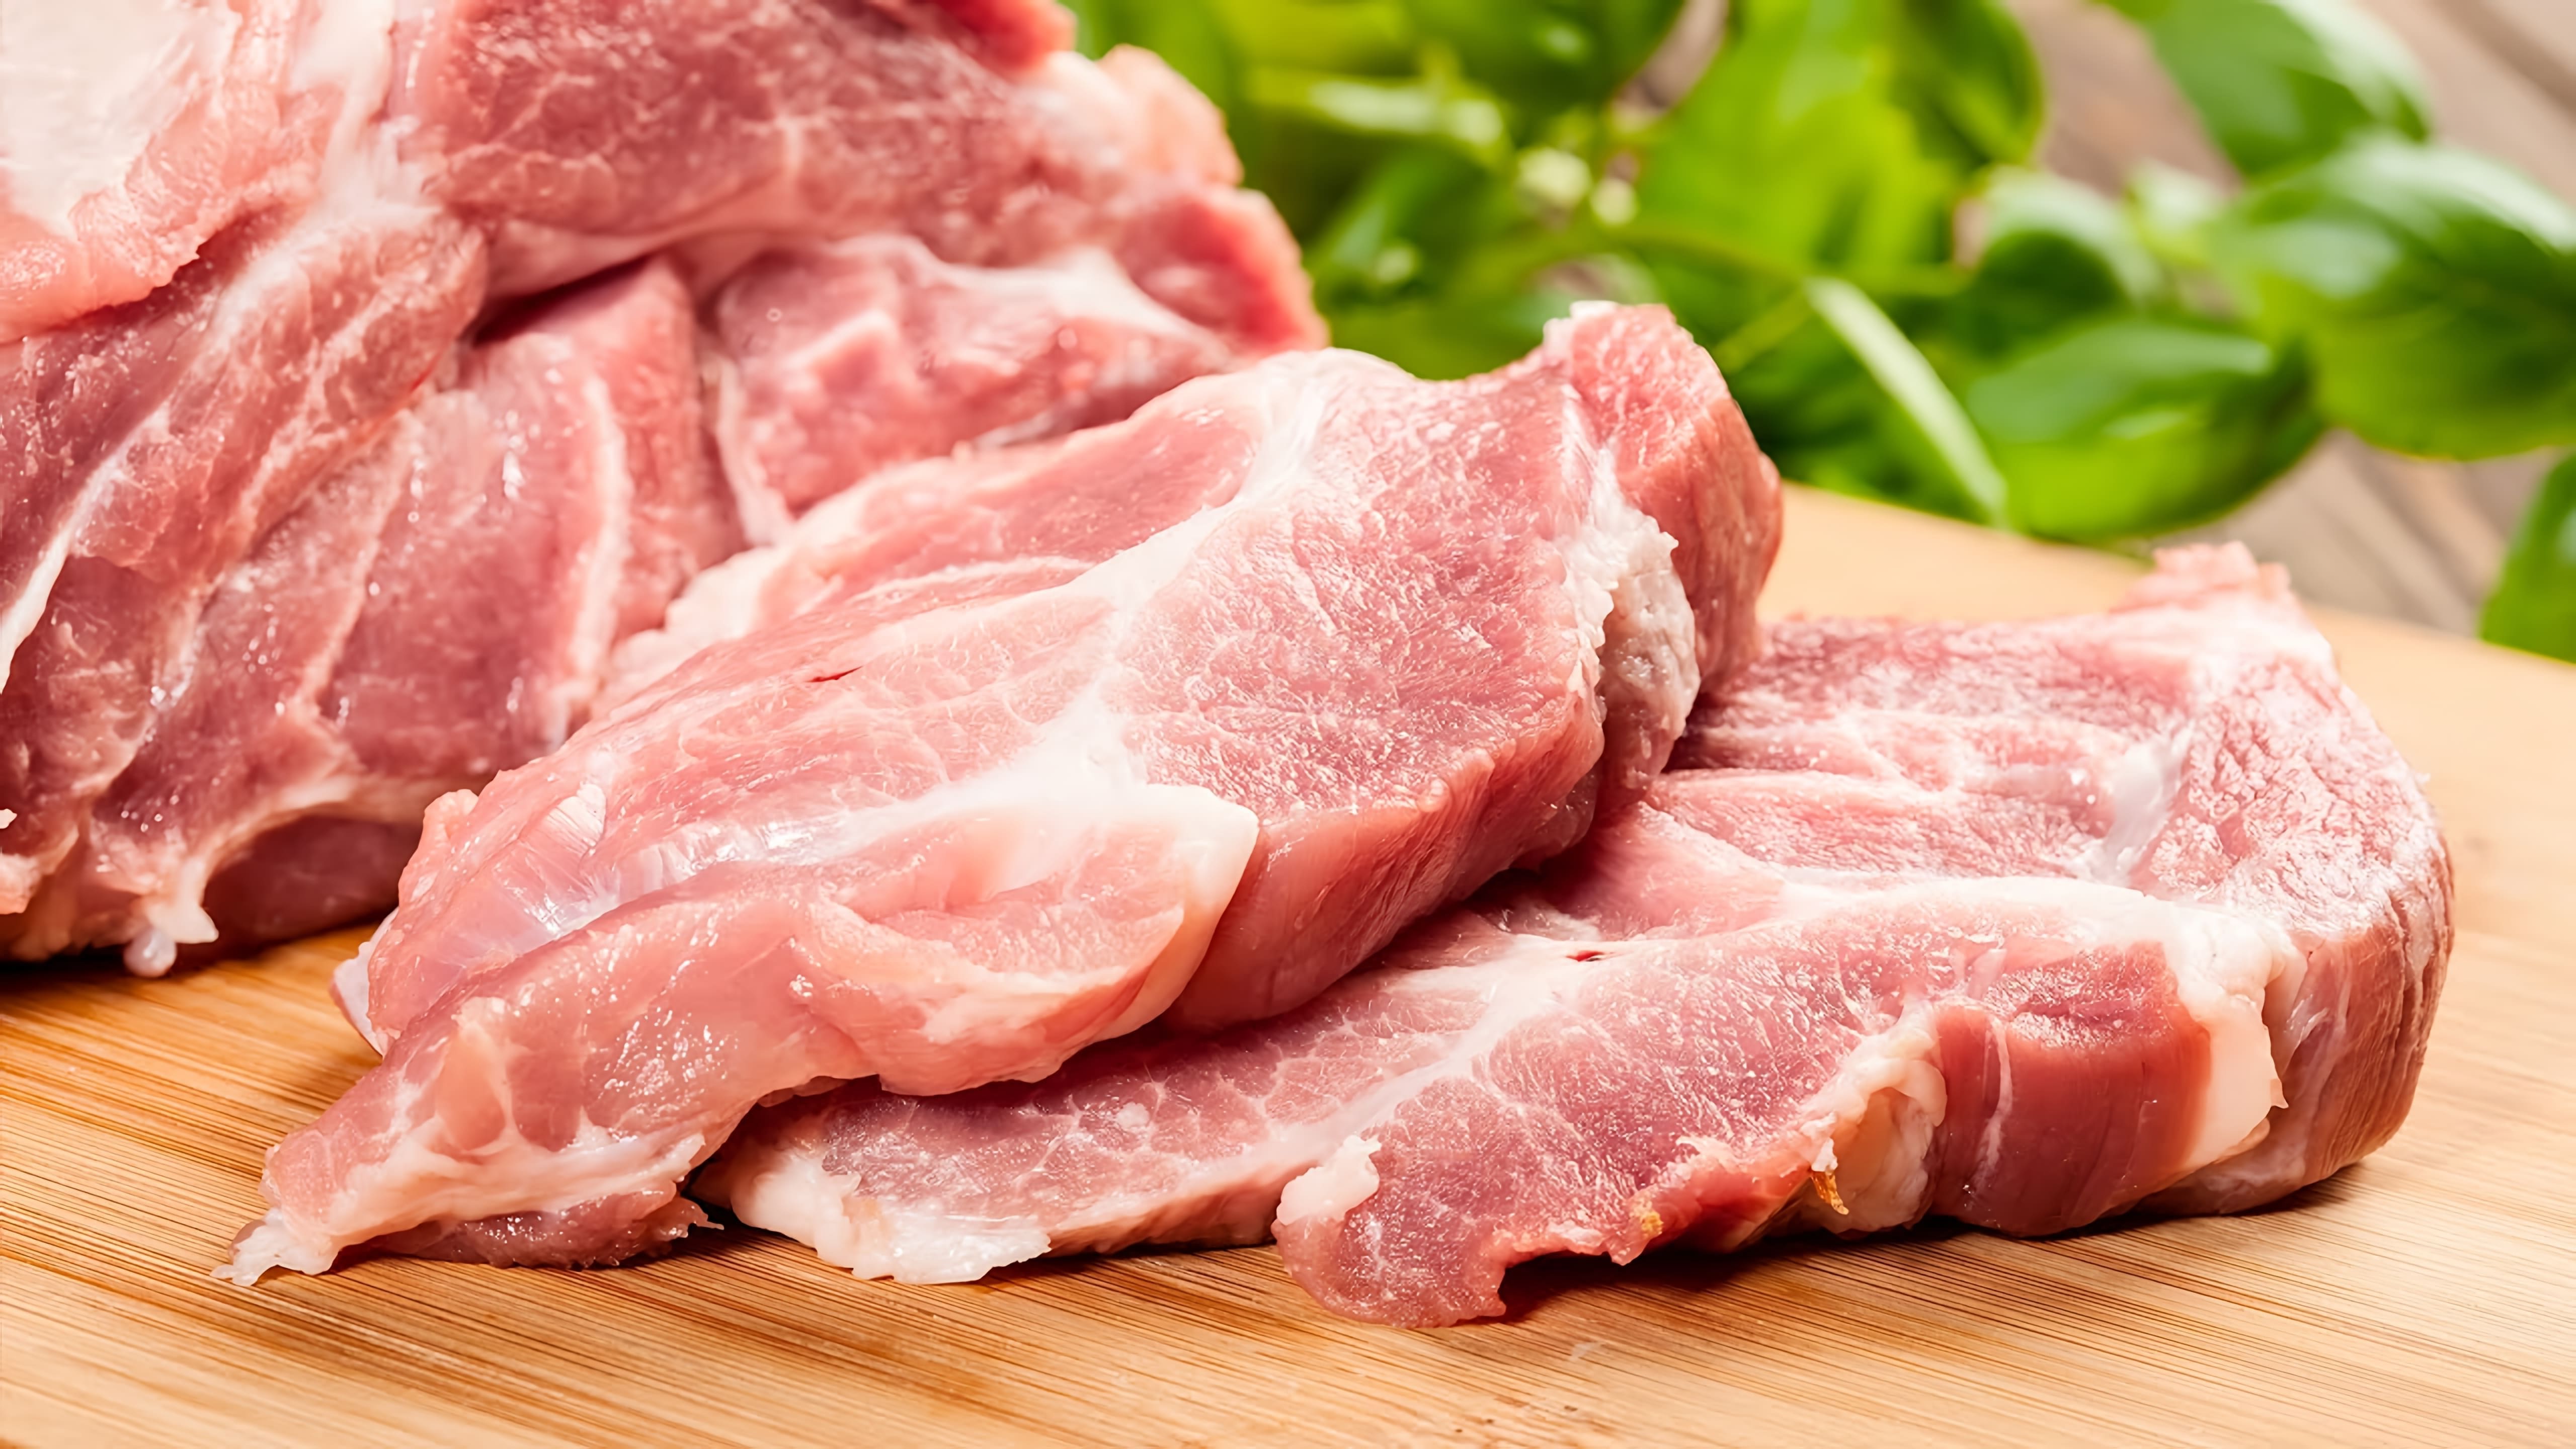 В этом видео рассказывается о четырех знаменитых блюдах из свинины, которые были приготовлены в разных странах